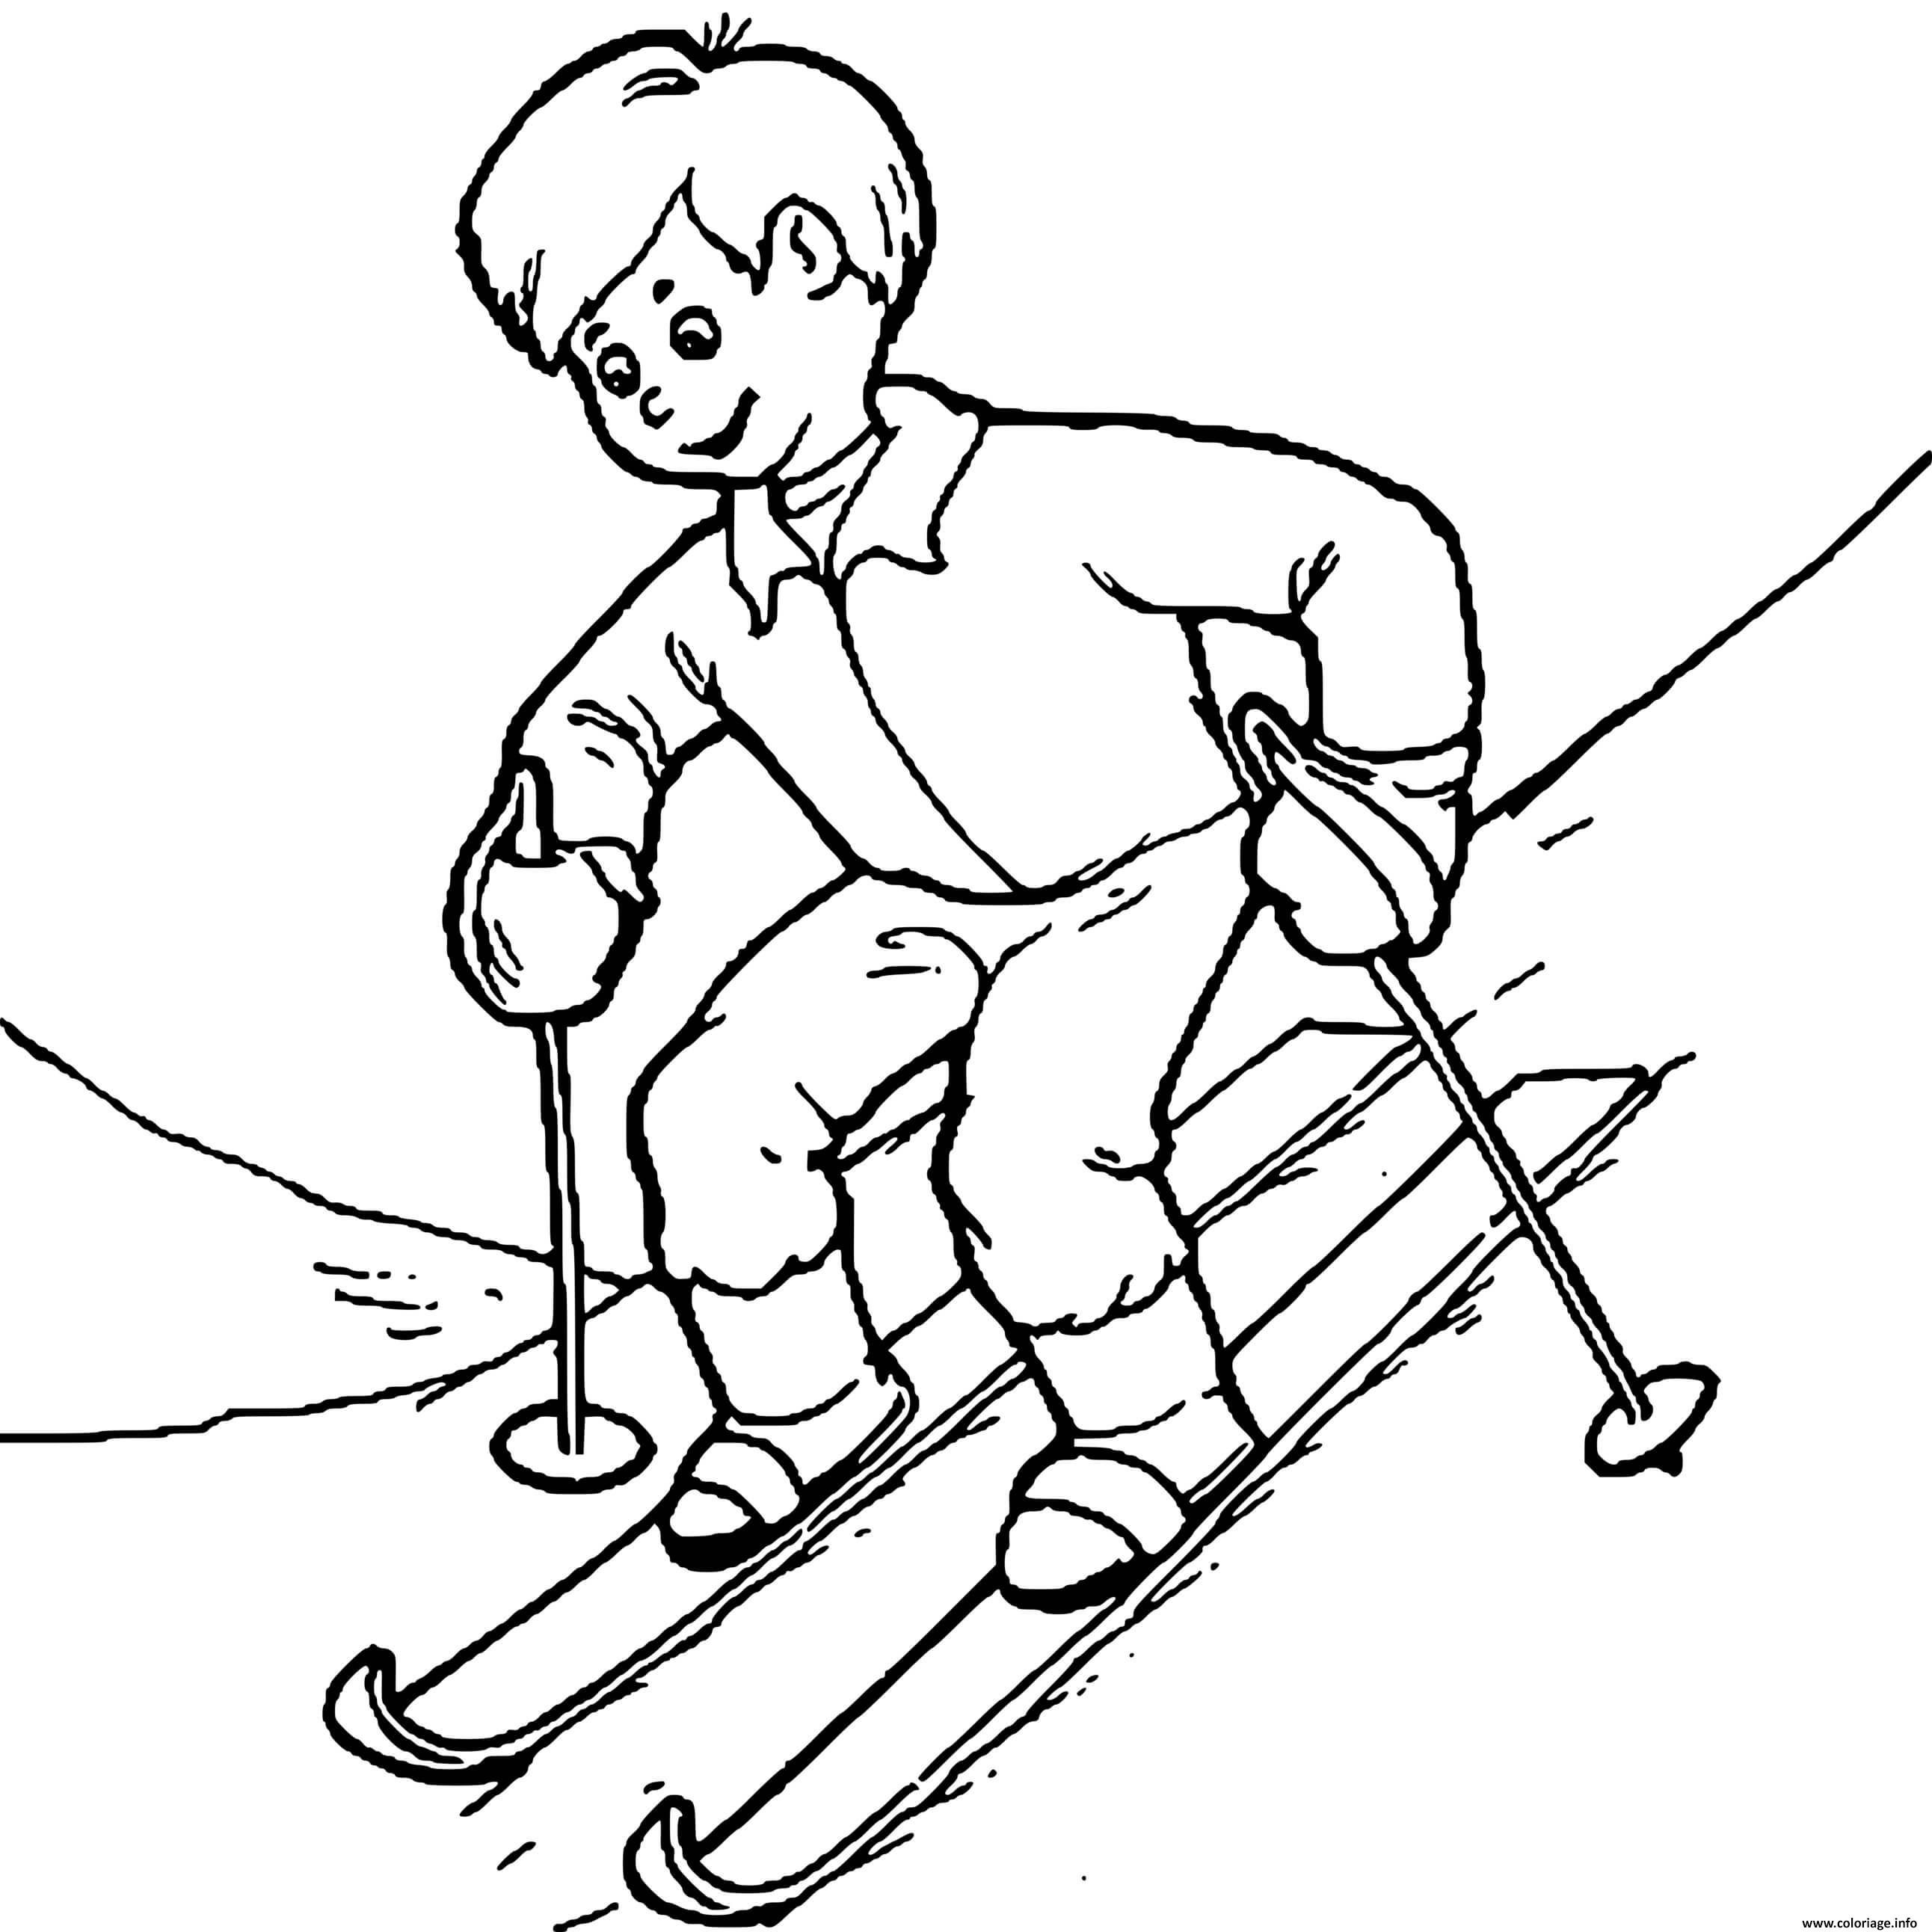 Dessin enfant qui apprend a skier Coloriage Gratuit à Imprimer